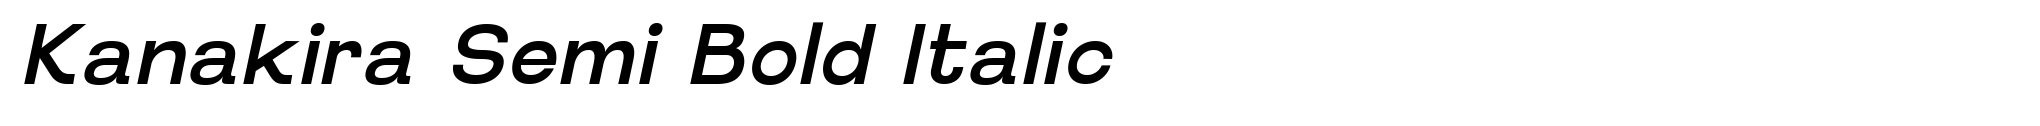 Kanakira Semi Bold Italic image